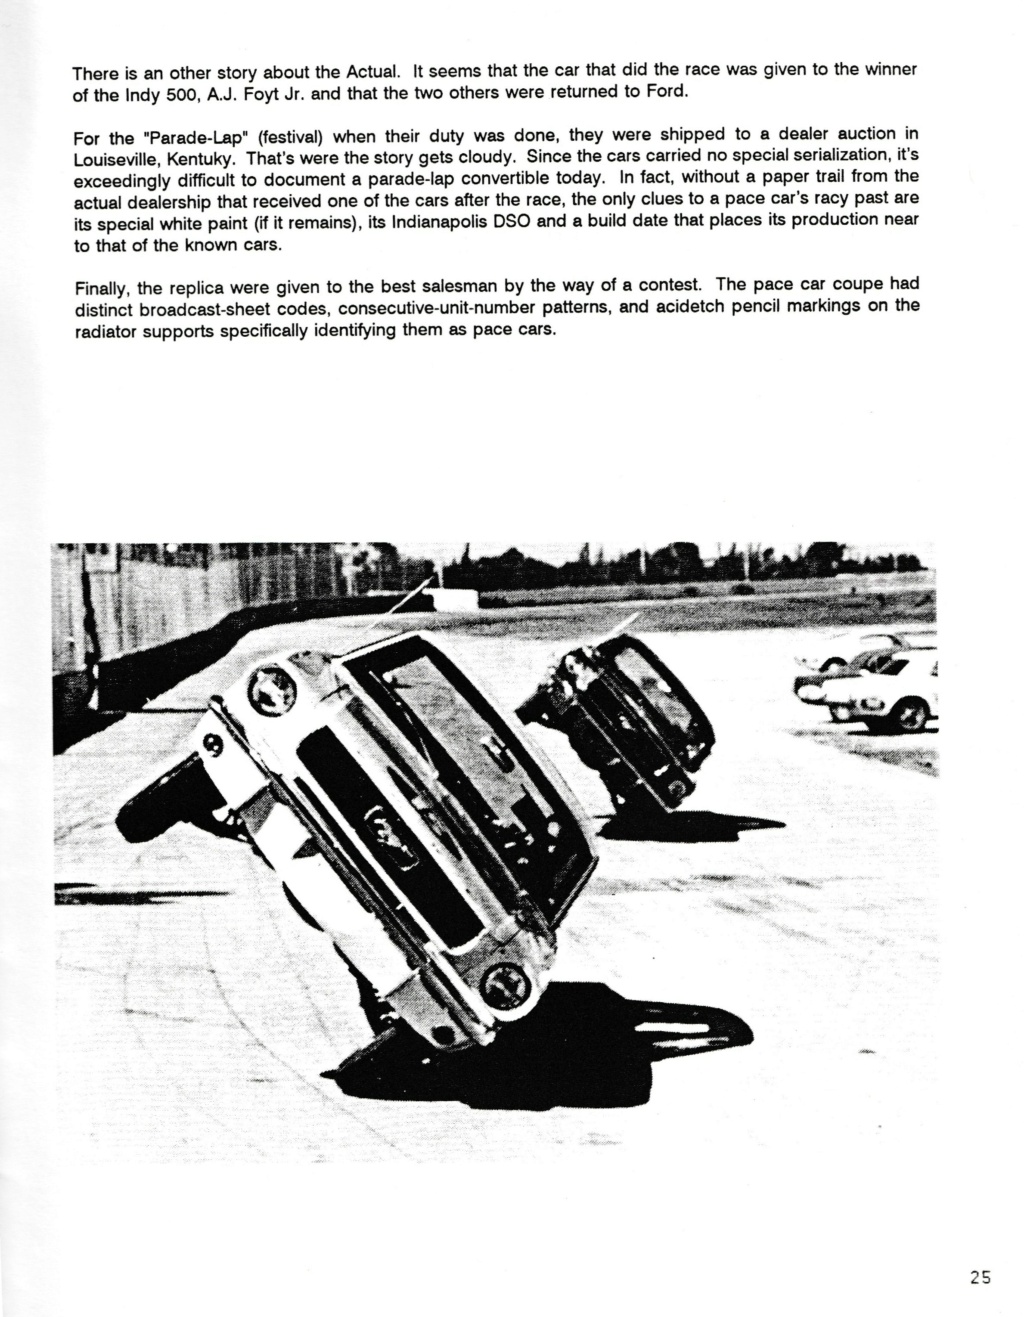 Montréal Mustang dans le temps! 1981 à aujourd'hui (Histoire en photos) - Page 8 Img_2435